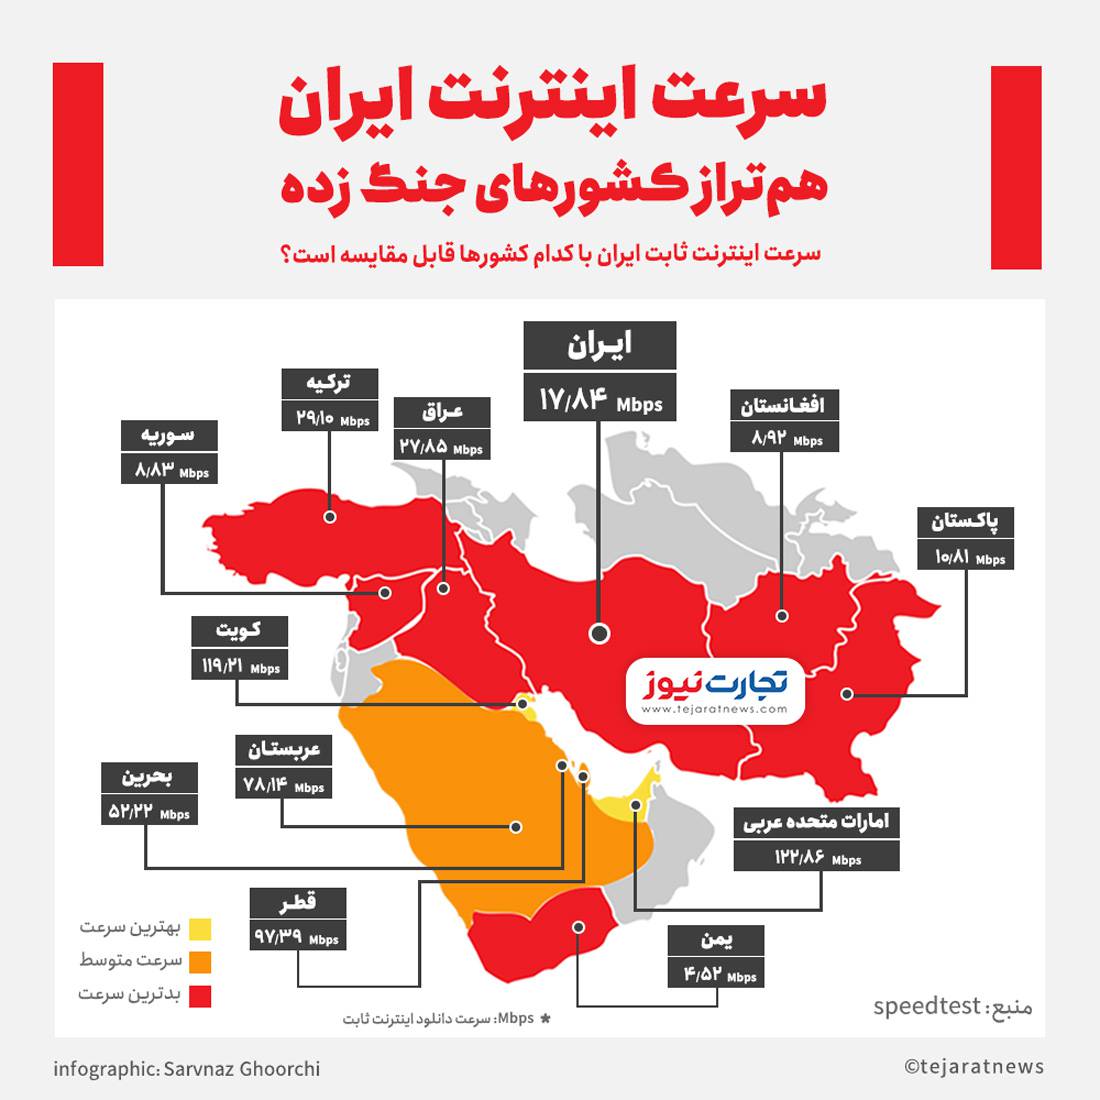 سرعت اینترنت ایران هم تراز کشورهای جنگ زده!